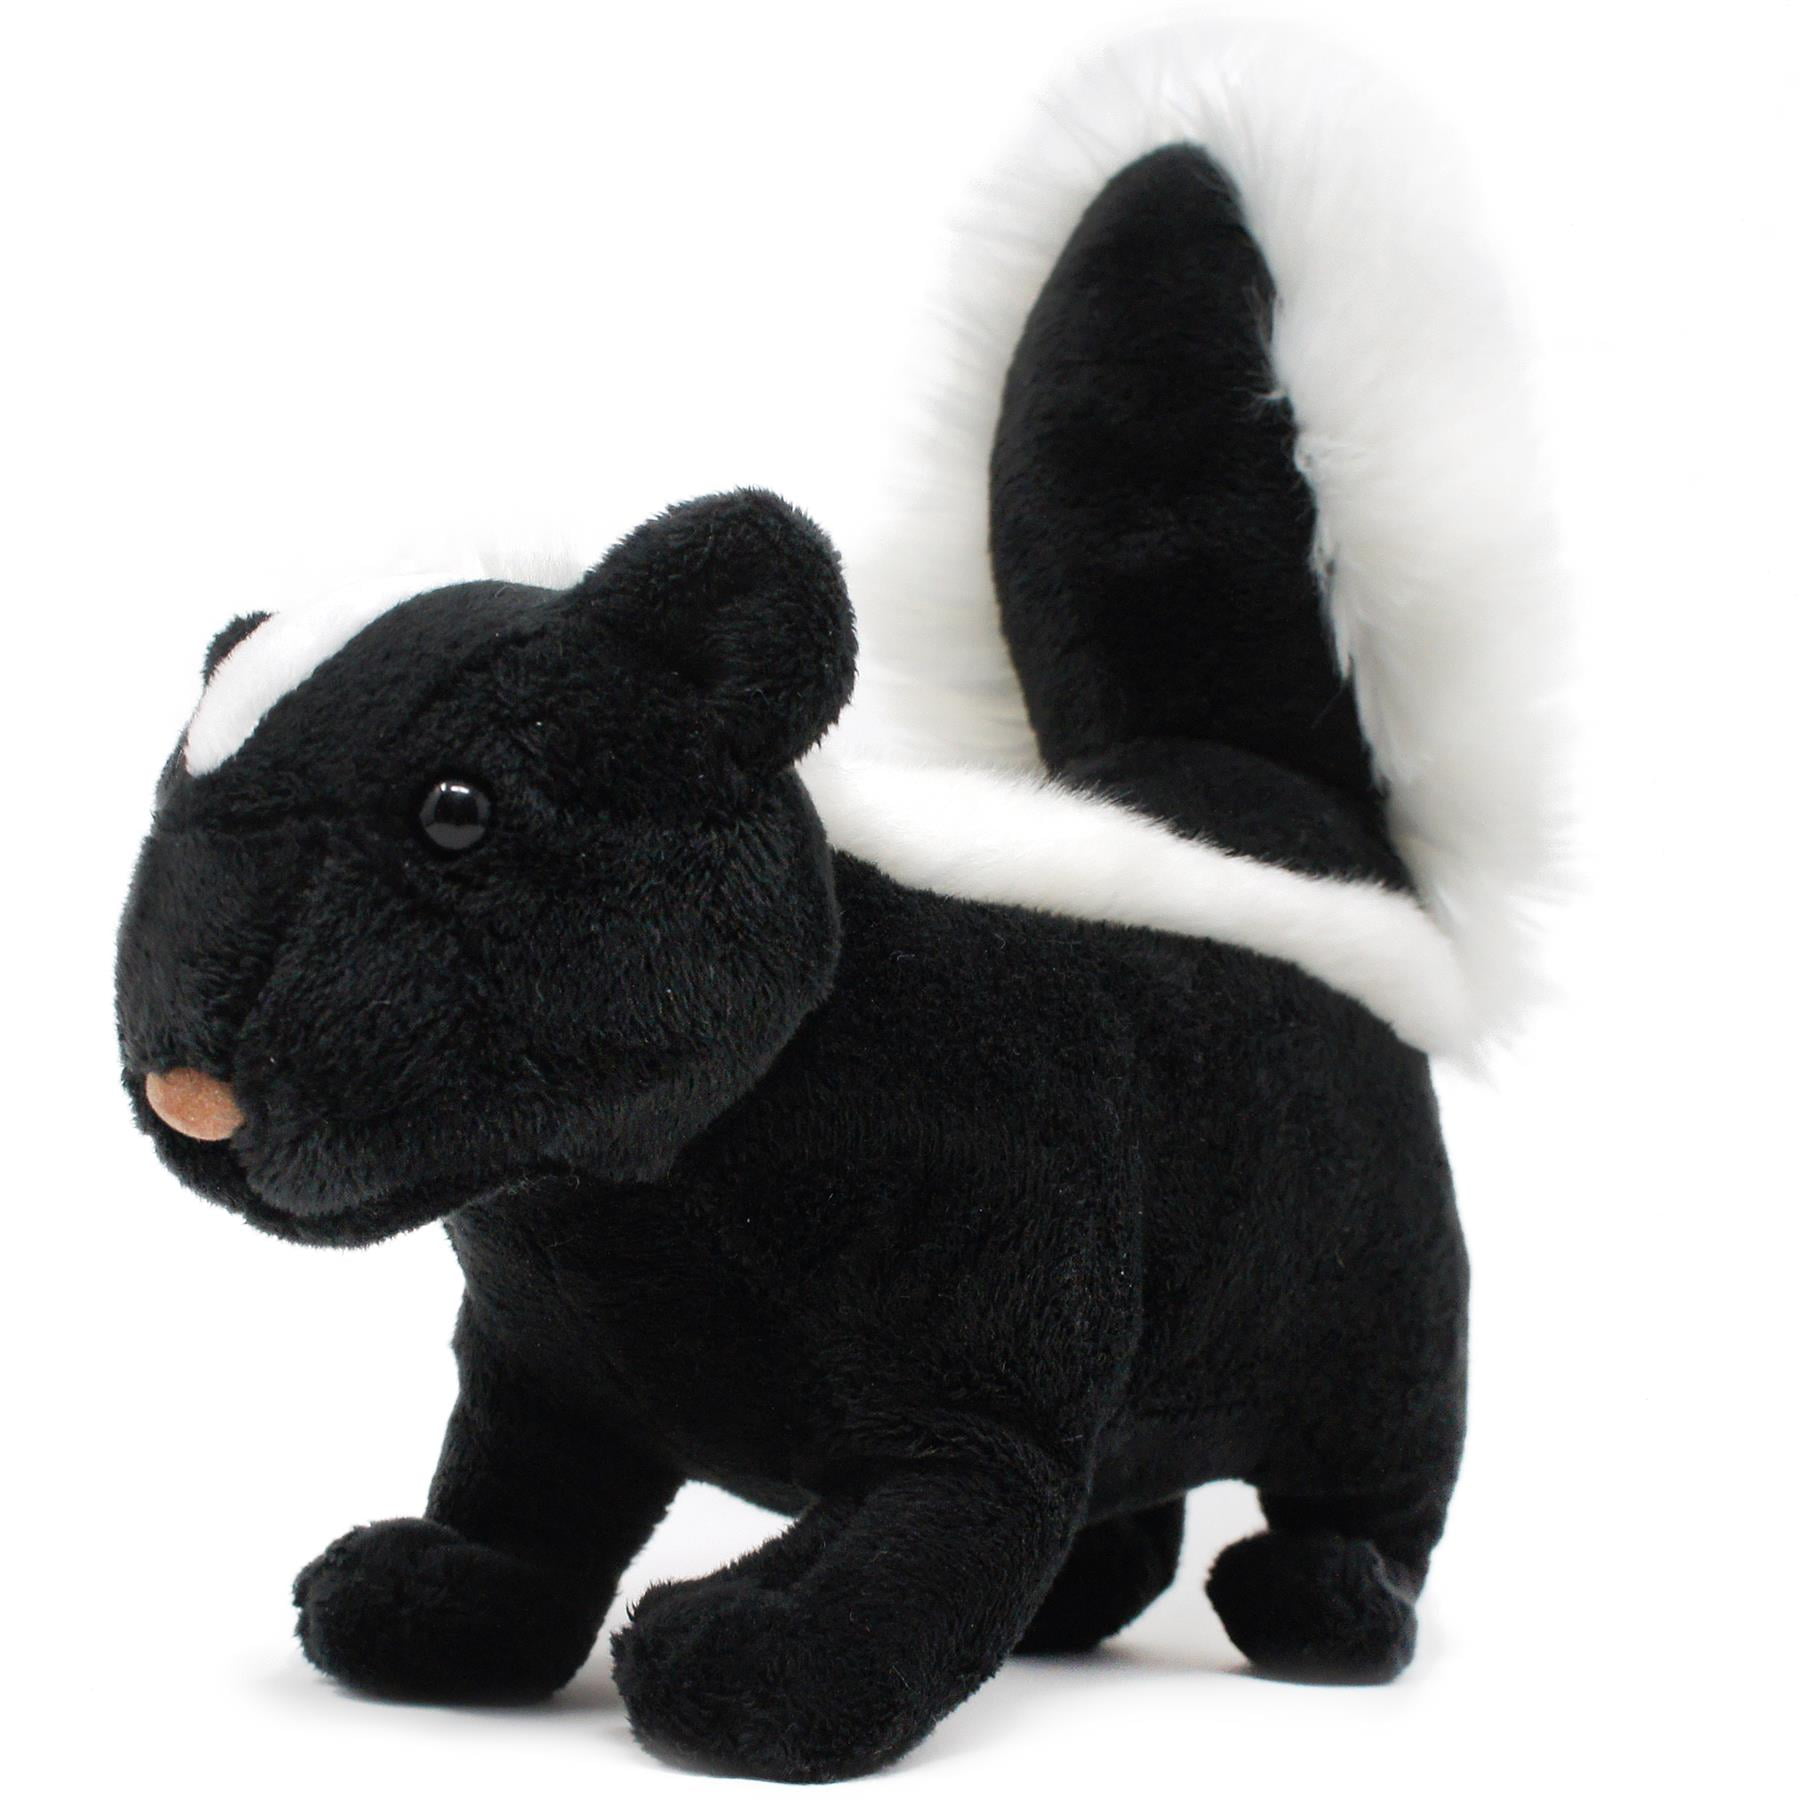 Flower Bean Bag Plush Bambi 6in Disney Stuffed Animal Skunk Black White for sale online 